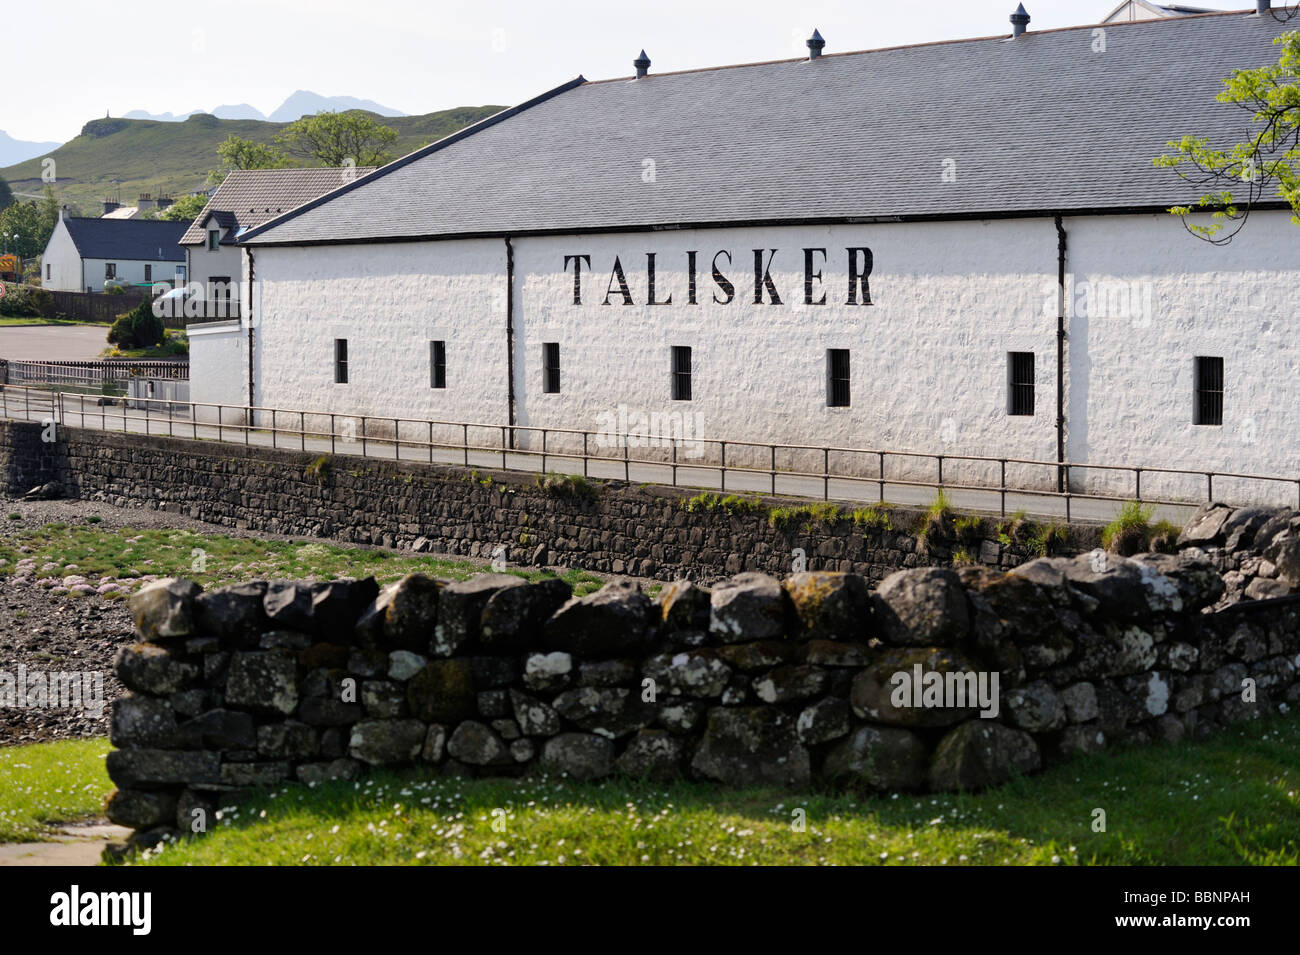 La distillerie de whisky Talisker. Le Loch Harport, Carbost, ont profité, île de Skye, Hébrides intérieures, Ecosse, Royaume-Uni, Europe. Banque D'Images